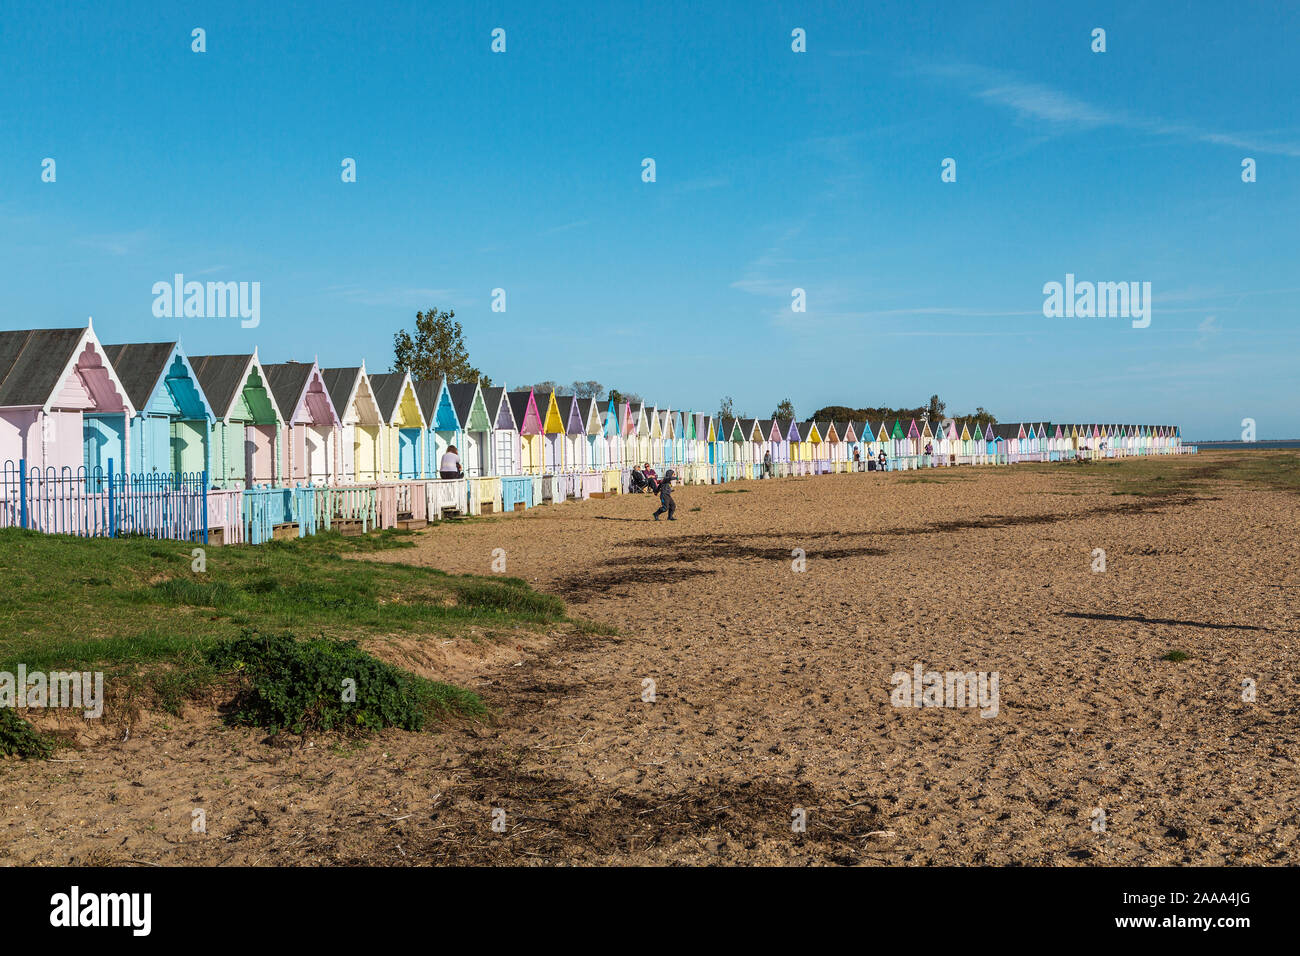 Une rangée de cabines de plage de couleur pastel à West Mersea. L'île de Mersea, Essex, Royaume-Uni. Banque D'Images